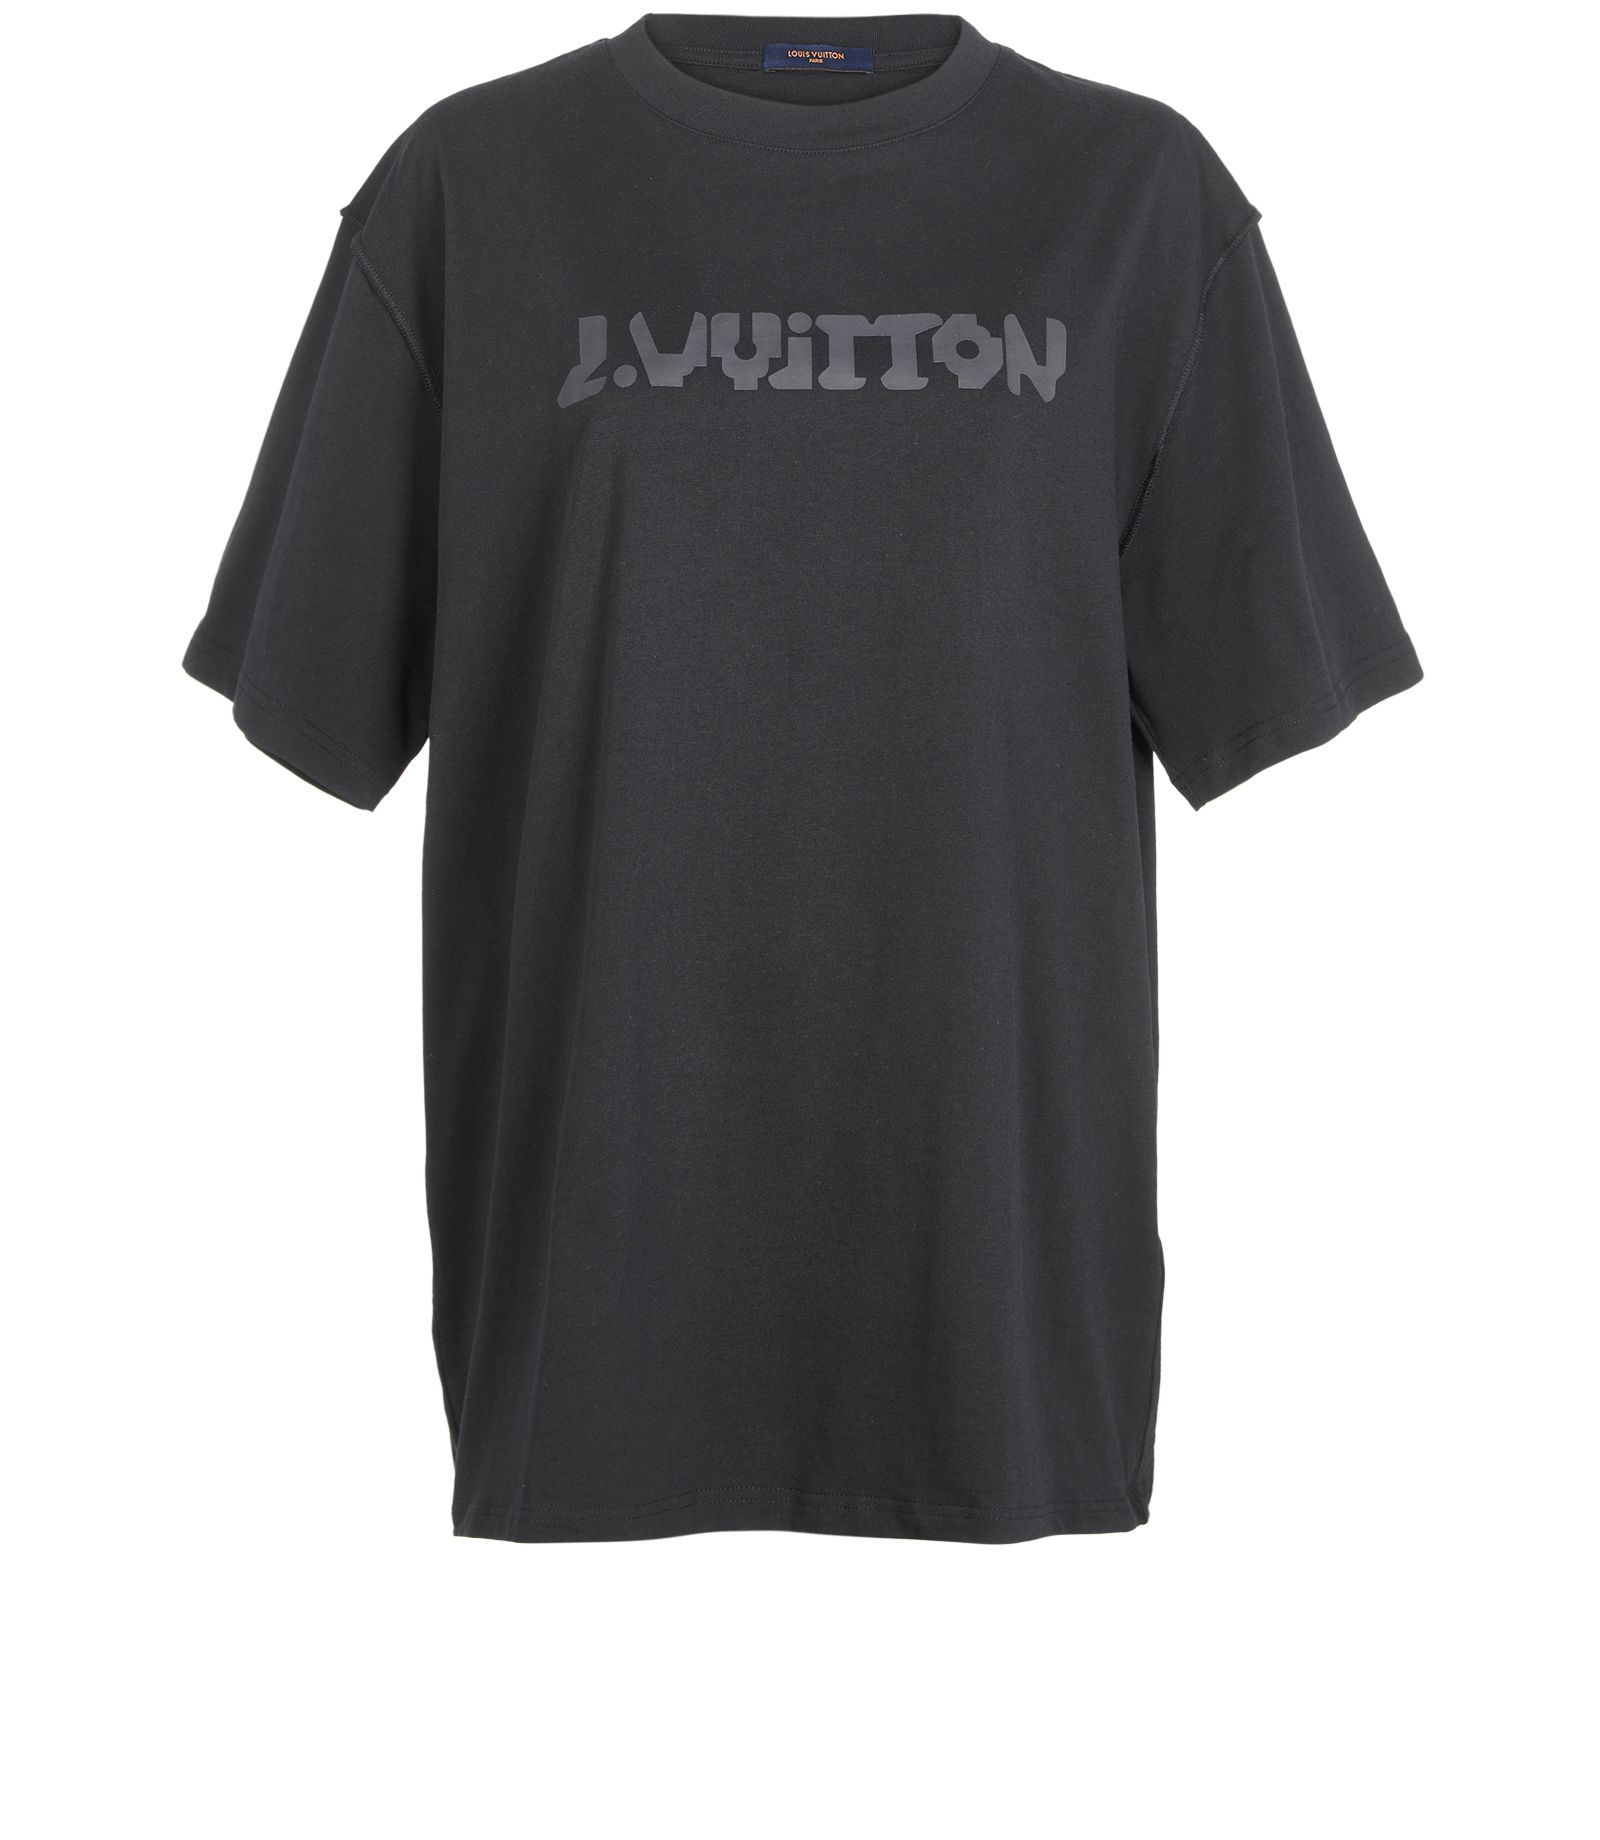 Louis Vuitton, Black shirt - Unique Designer Pieces